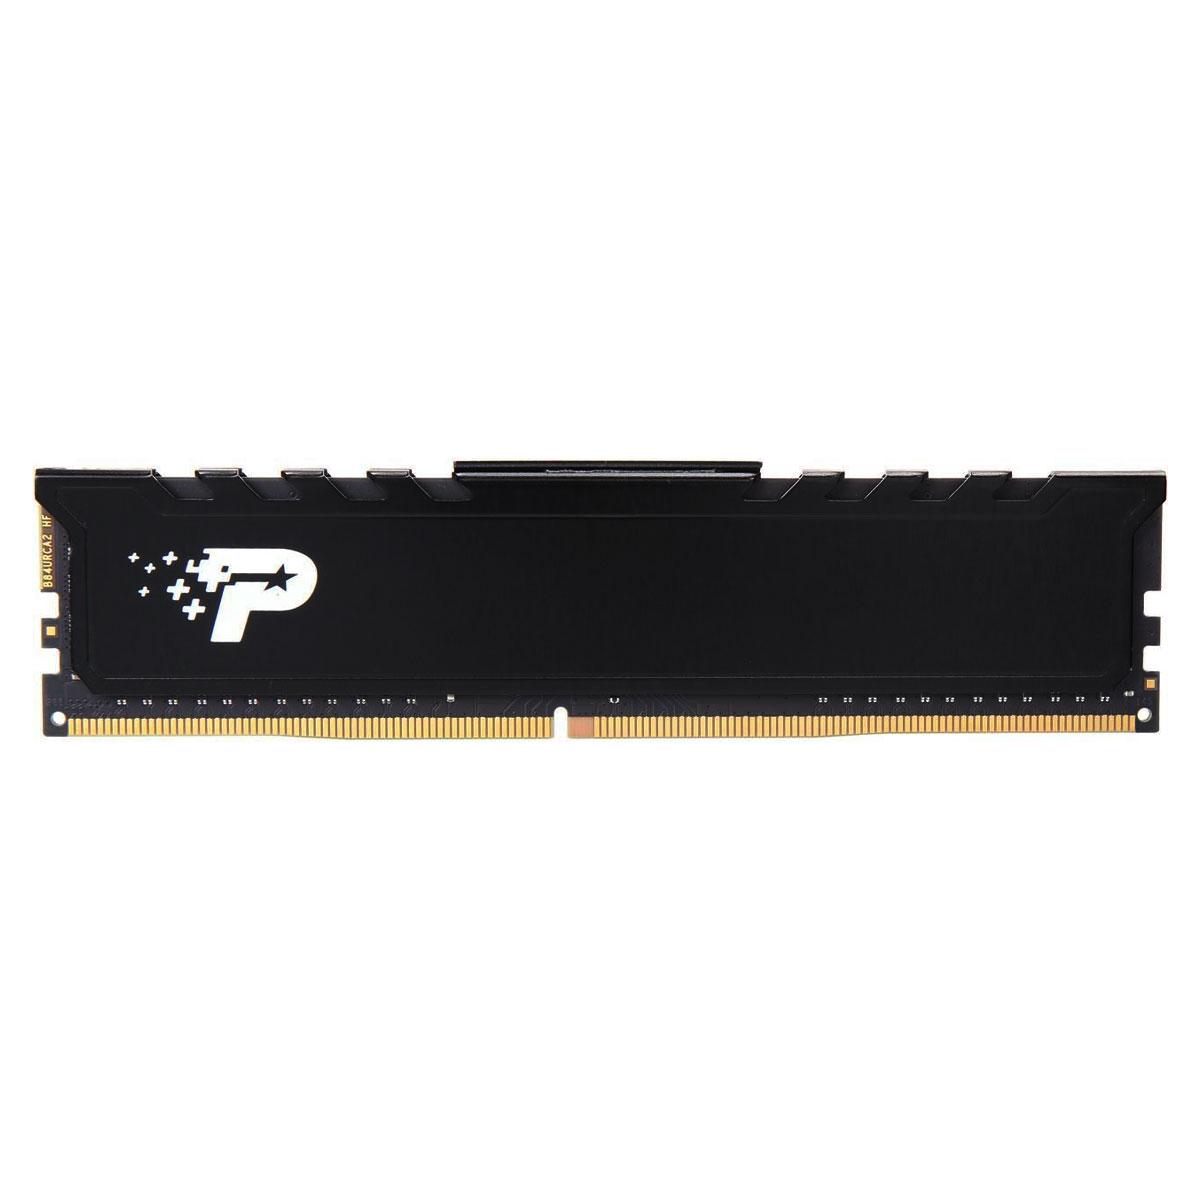 MEMORIA DIMM DDR4 PATRIOT (PSP416G26662H1) SIGNATURE PREMIUM 16GB 2666MHZ, BLACK HEATSINK,CL19 - PSP416G26662H1